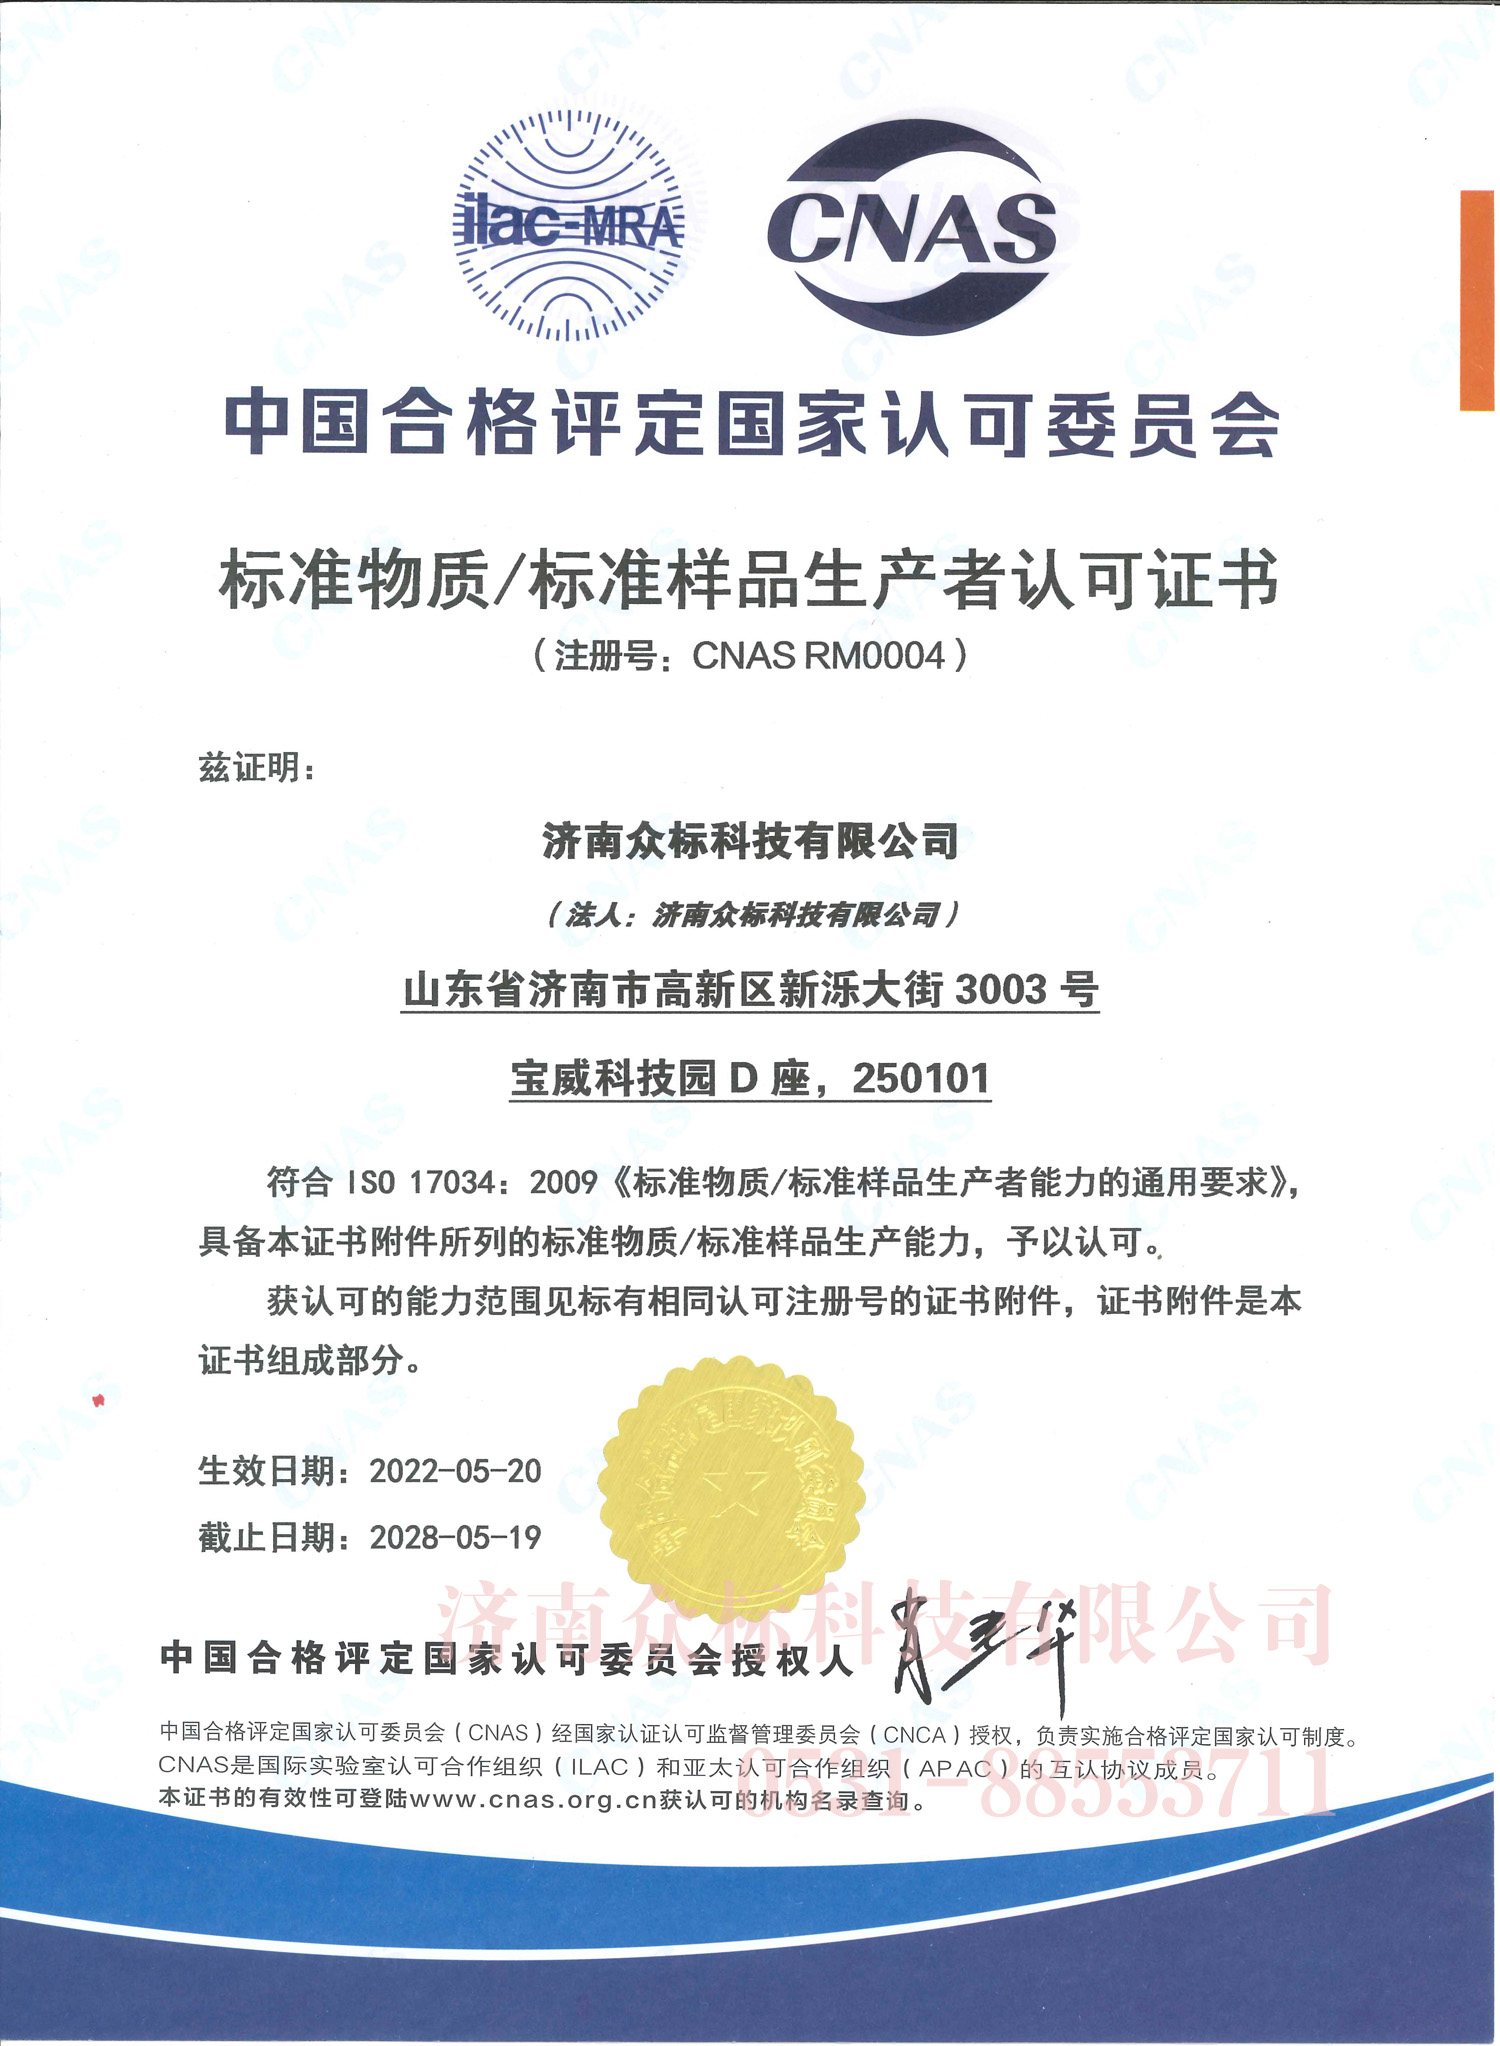 标准物质/标准样品生产者认可证书CNAS RM0004  中文版